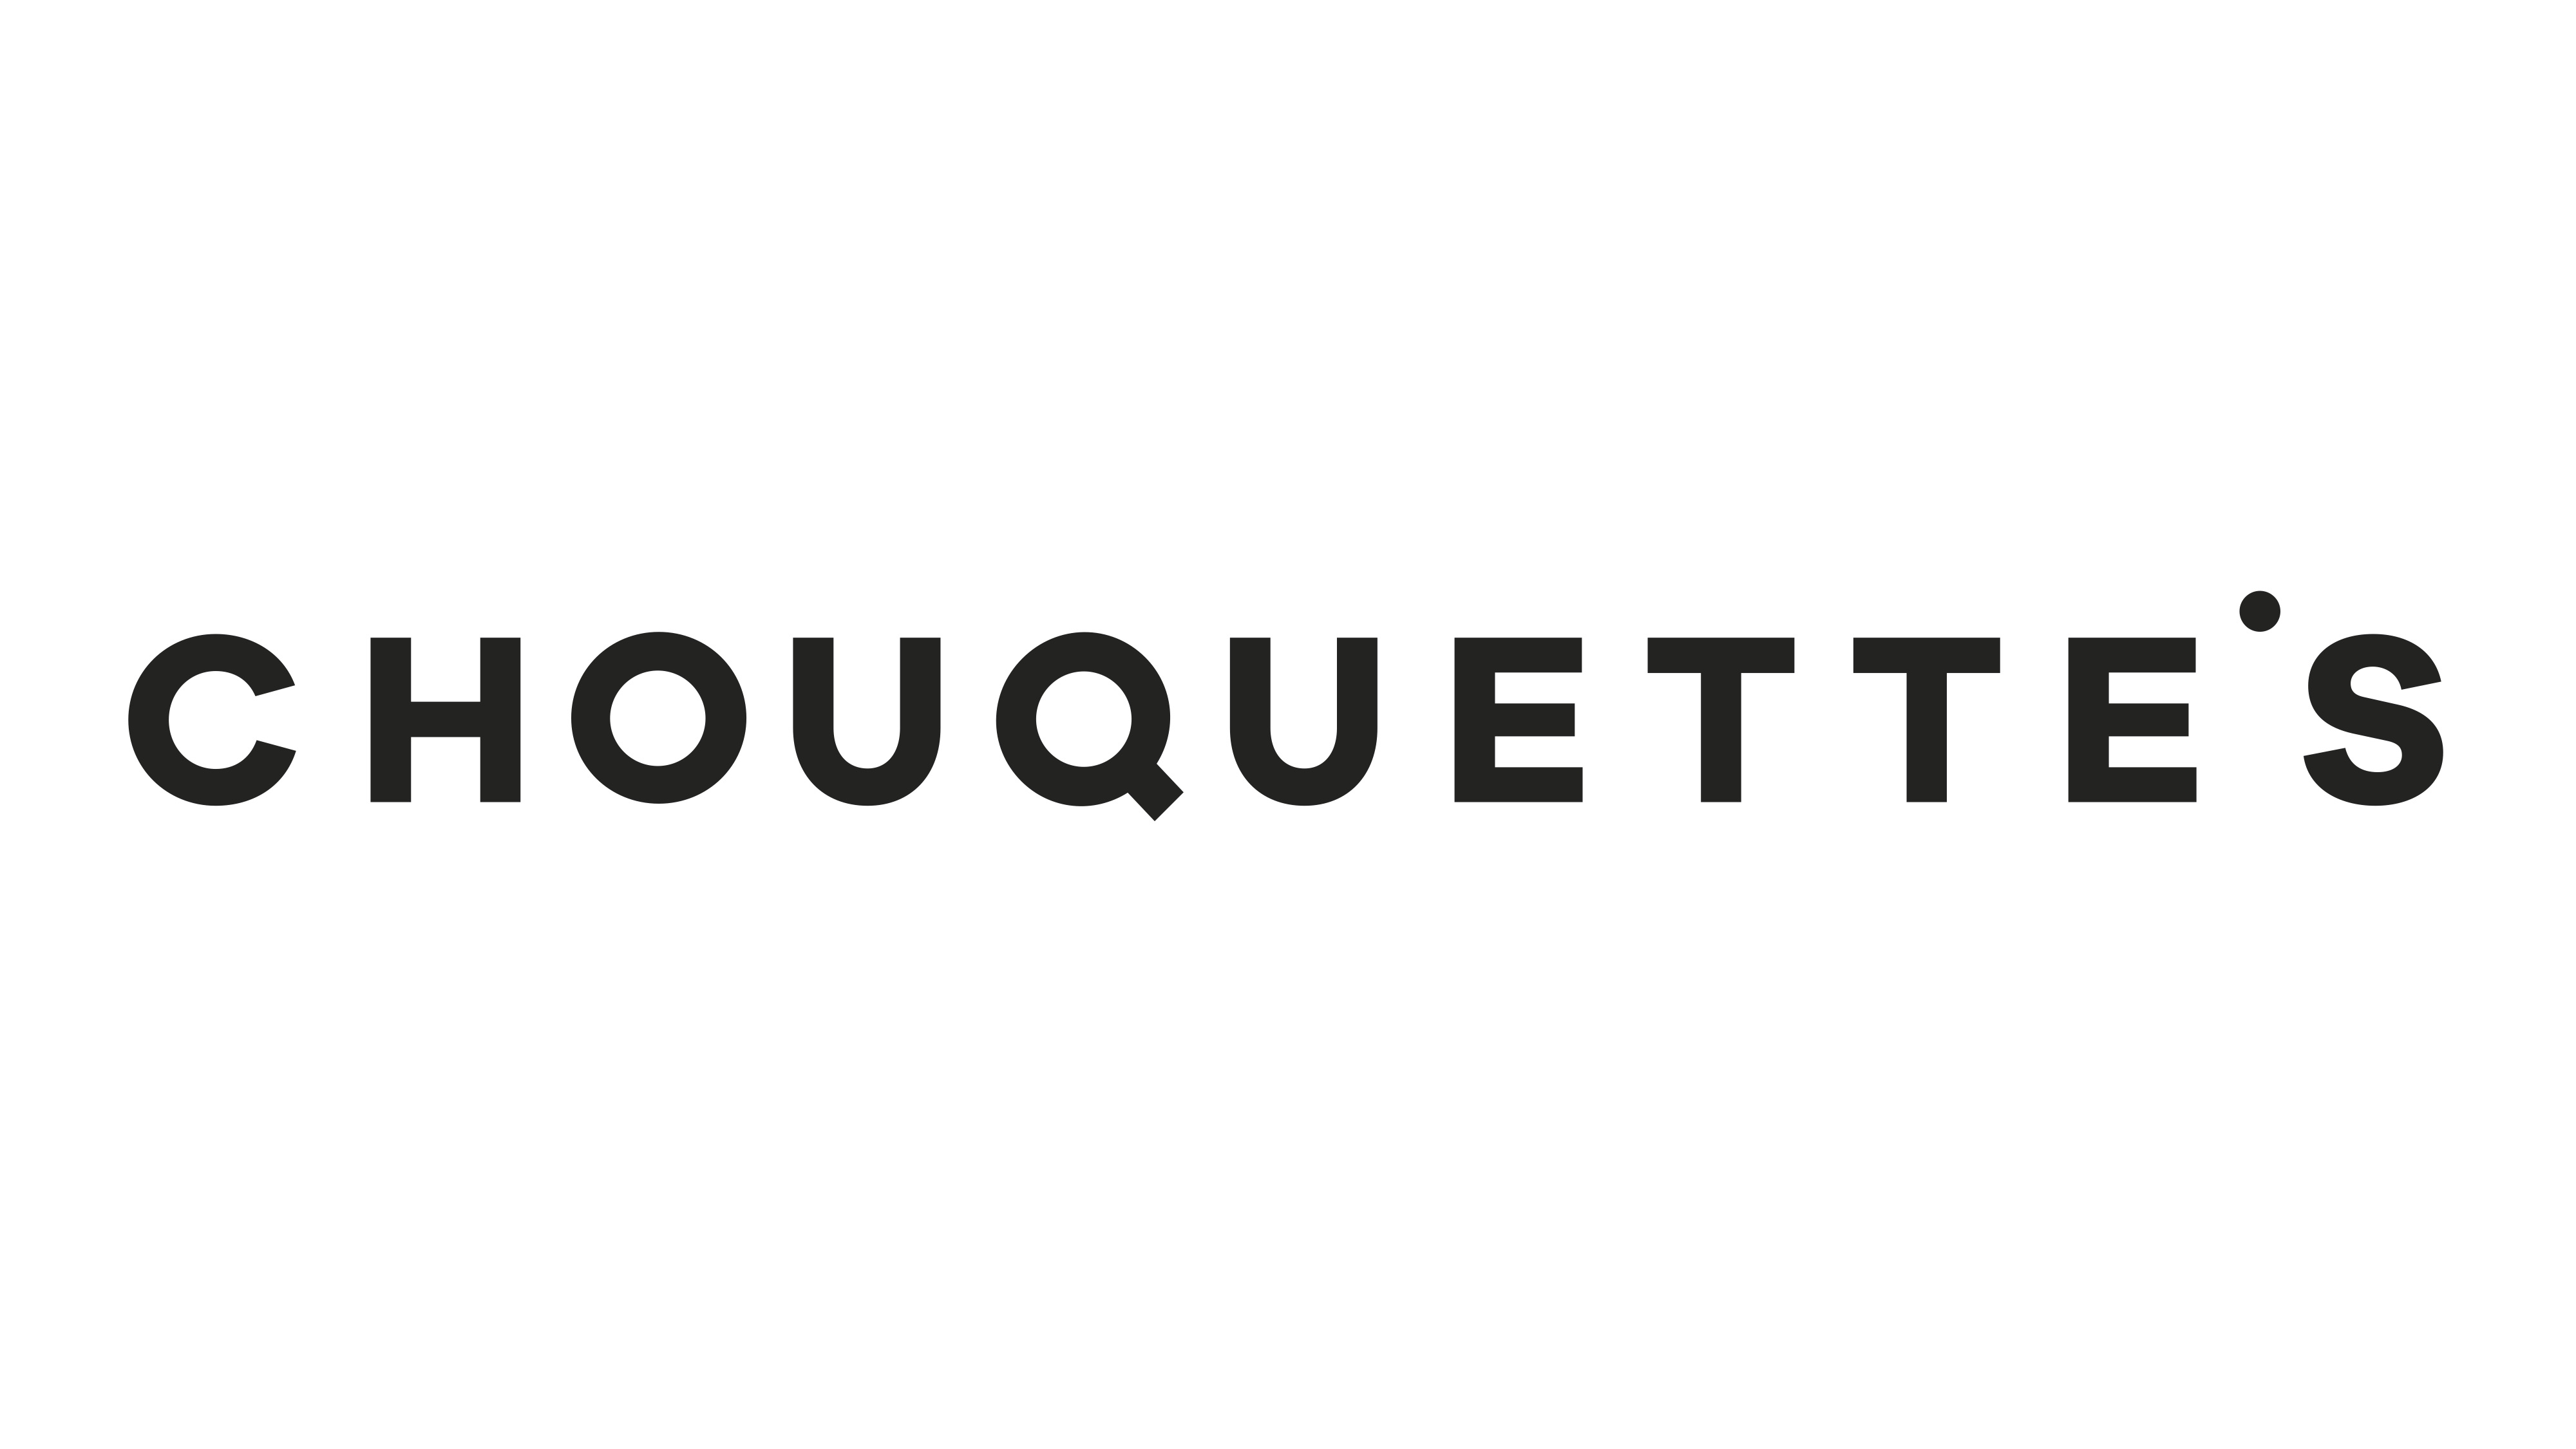 Chouquette's